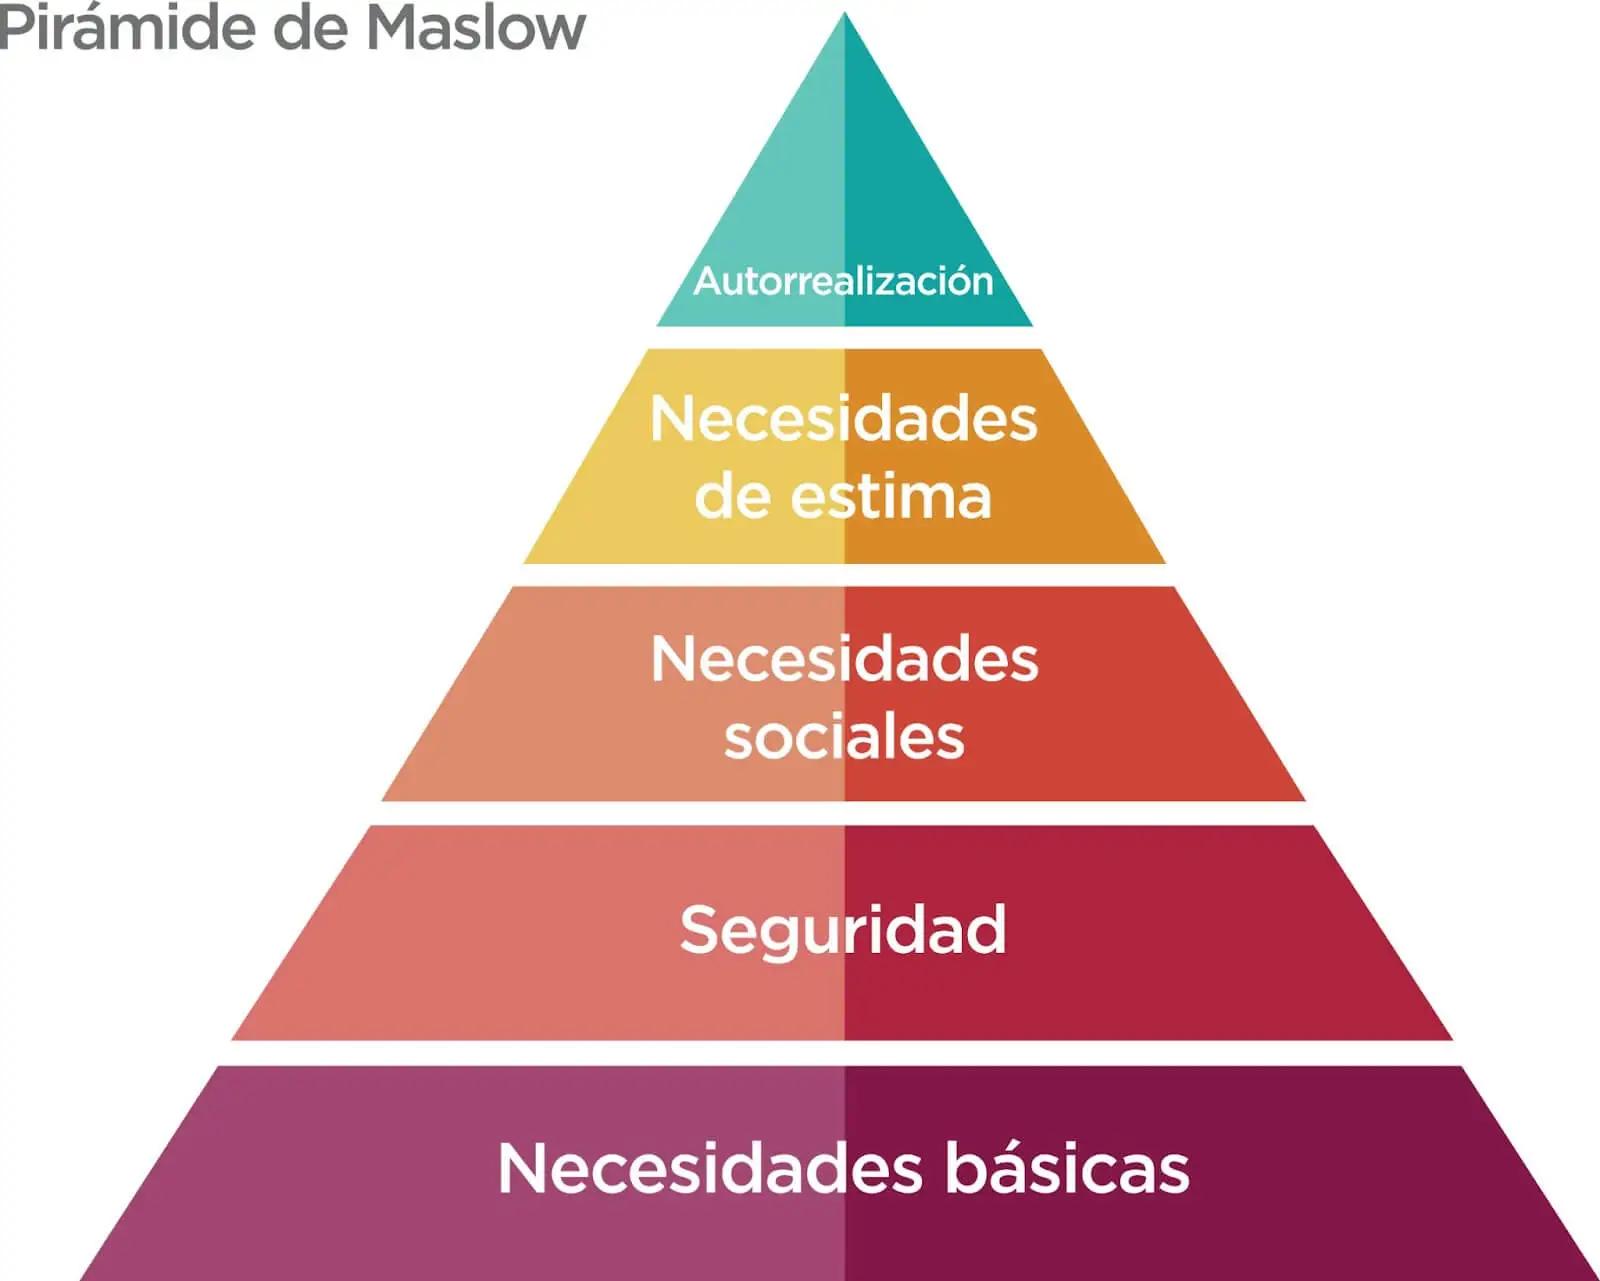 piramide de psicologia - Qué significa pirámide en psicología